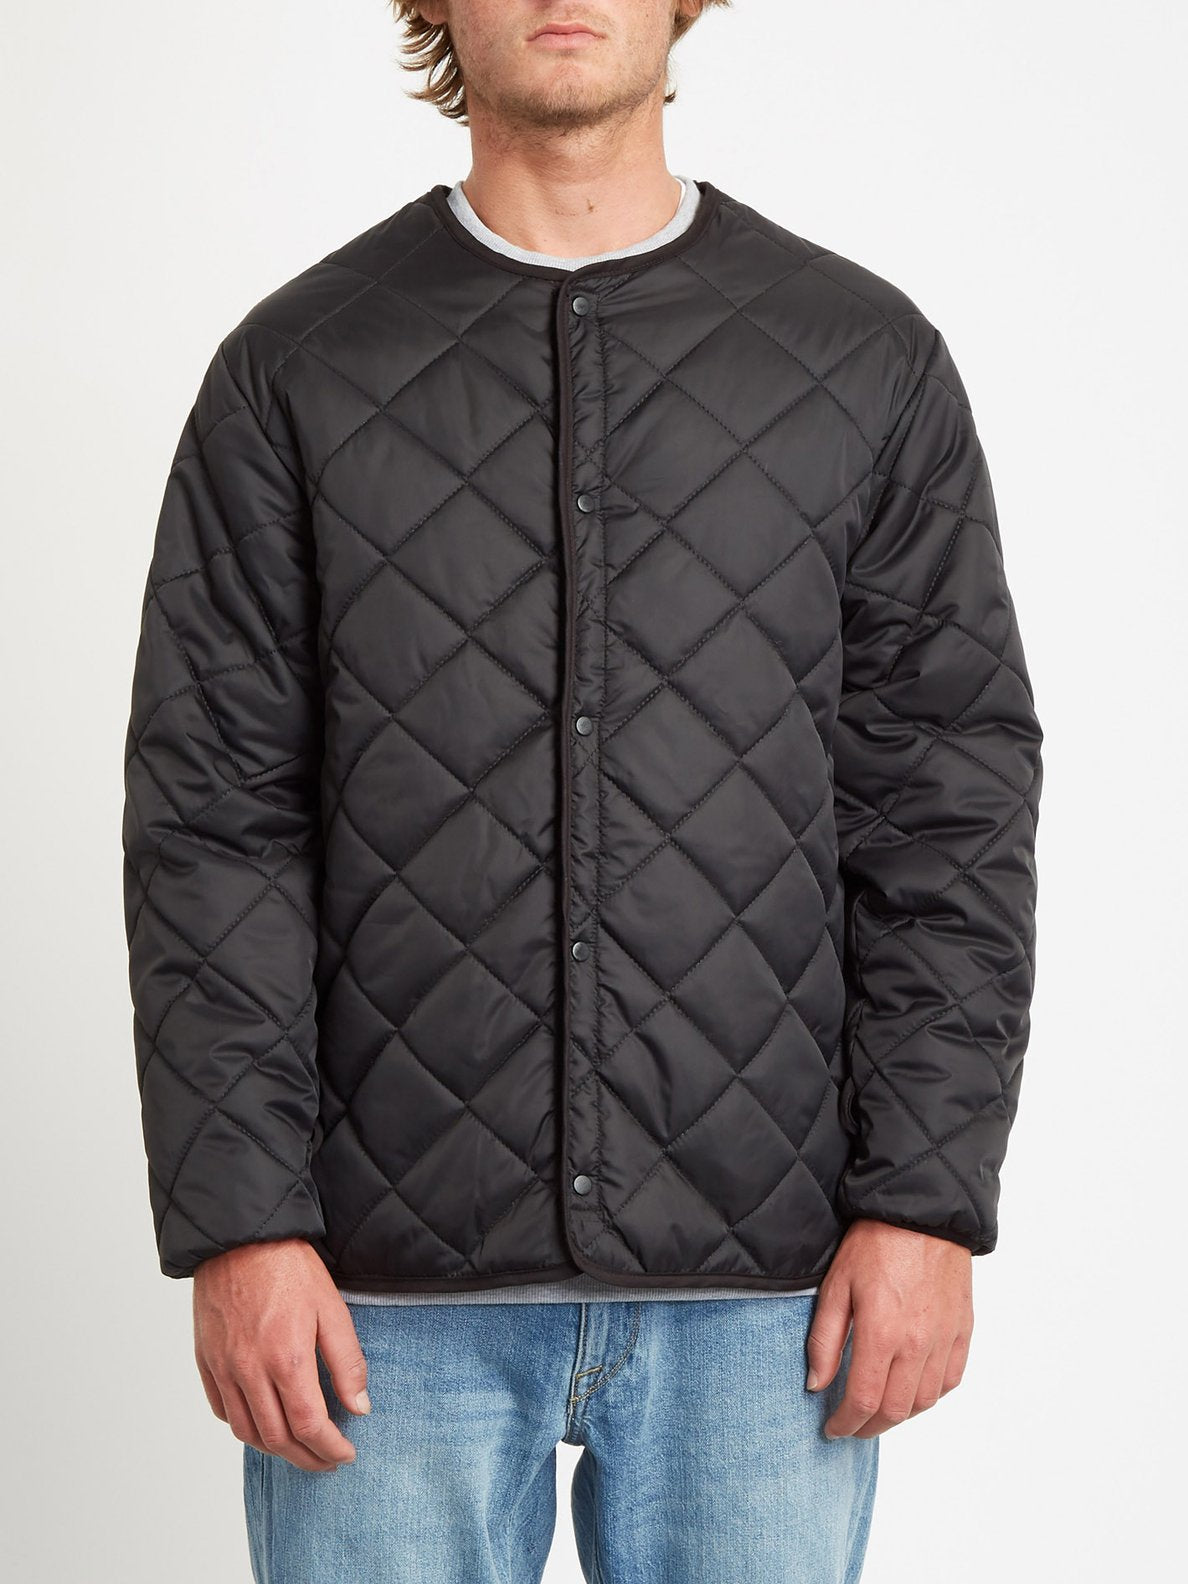 Wallstone Jacket 3 in 1- BLACK